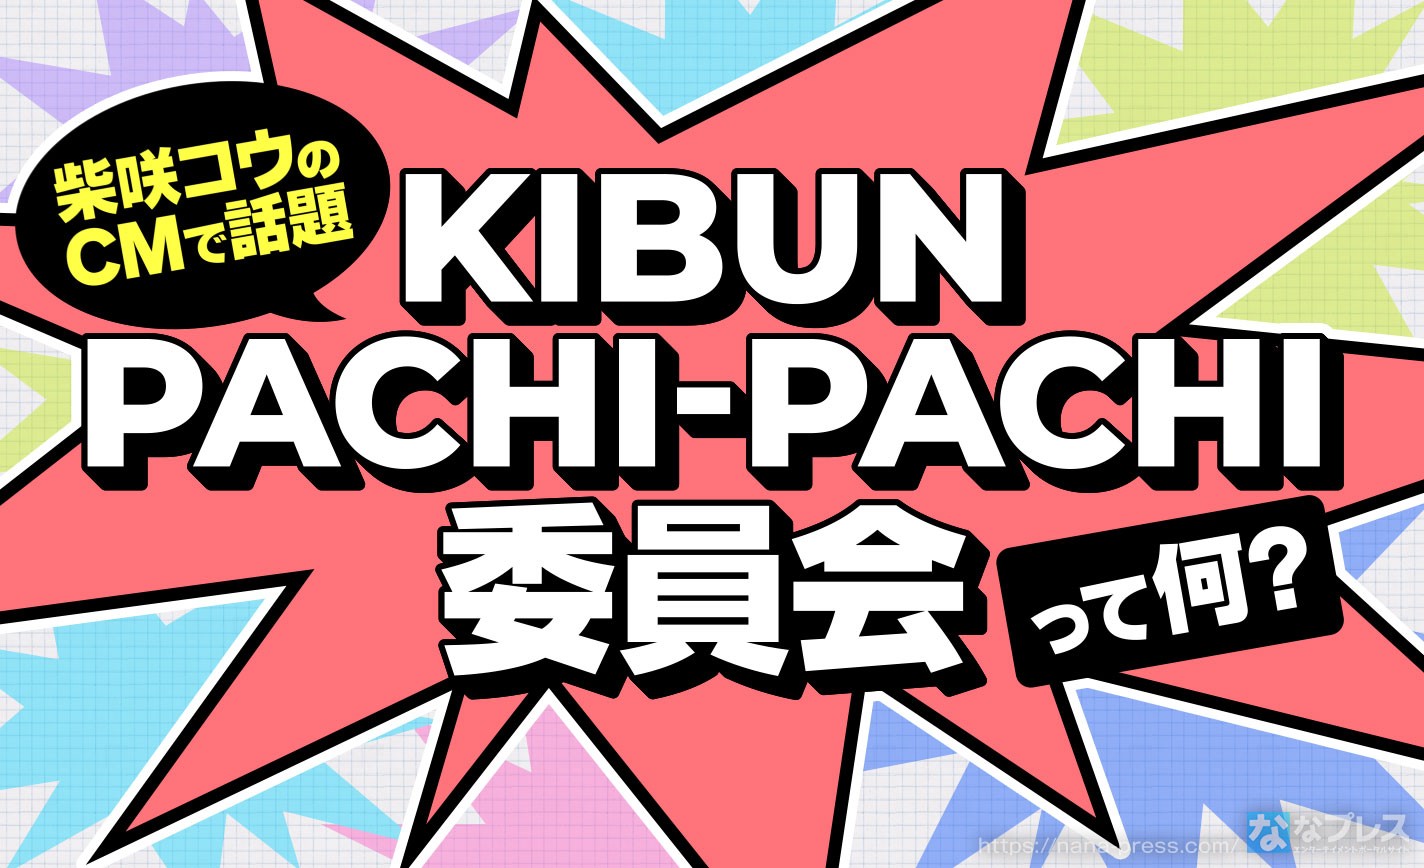 【KIBUN PACHI-PACHI】柴咲コウ出演のテレビCMで話題になったあのプロジェクトについて解説！ eyecatch-image